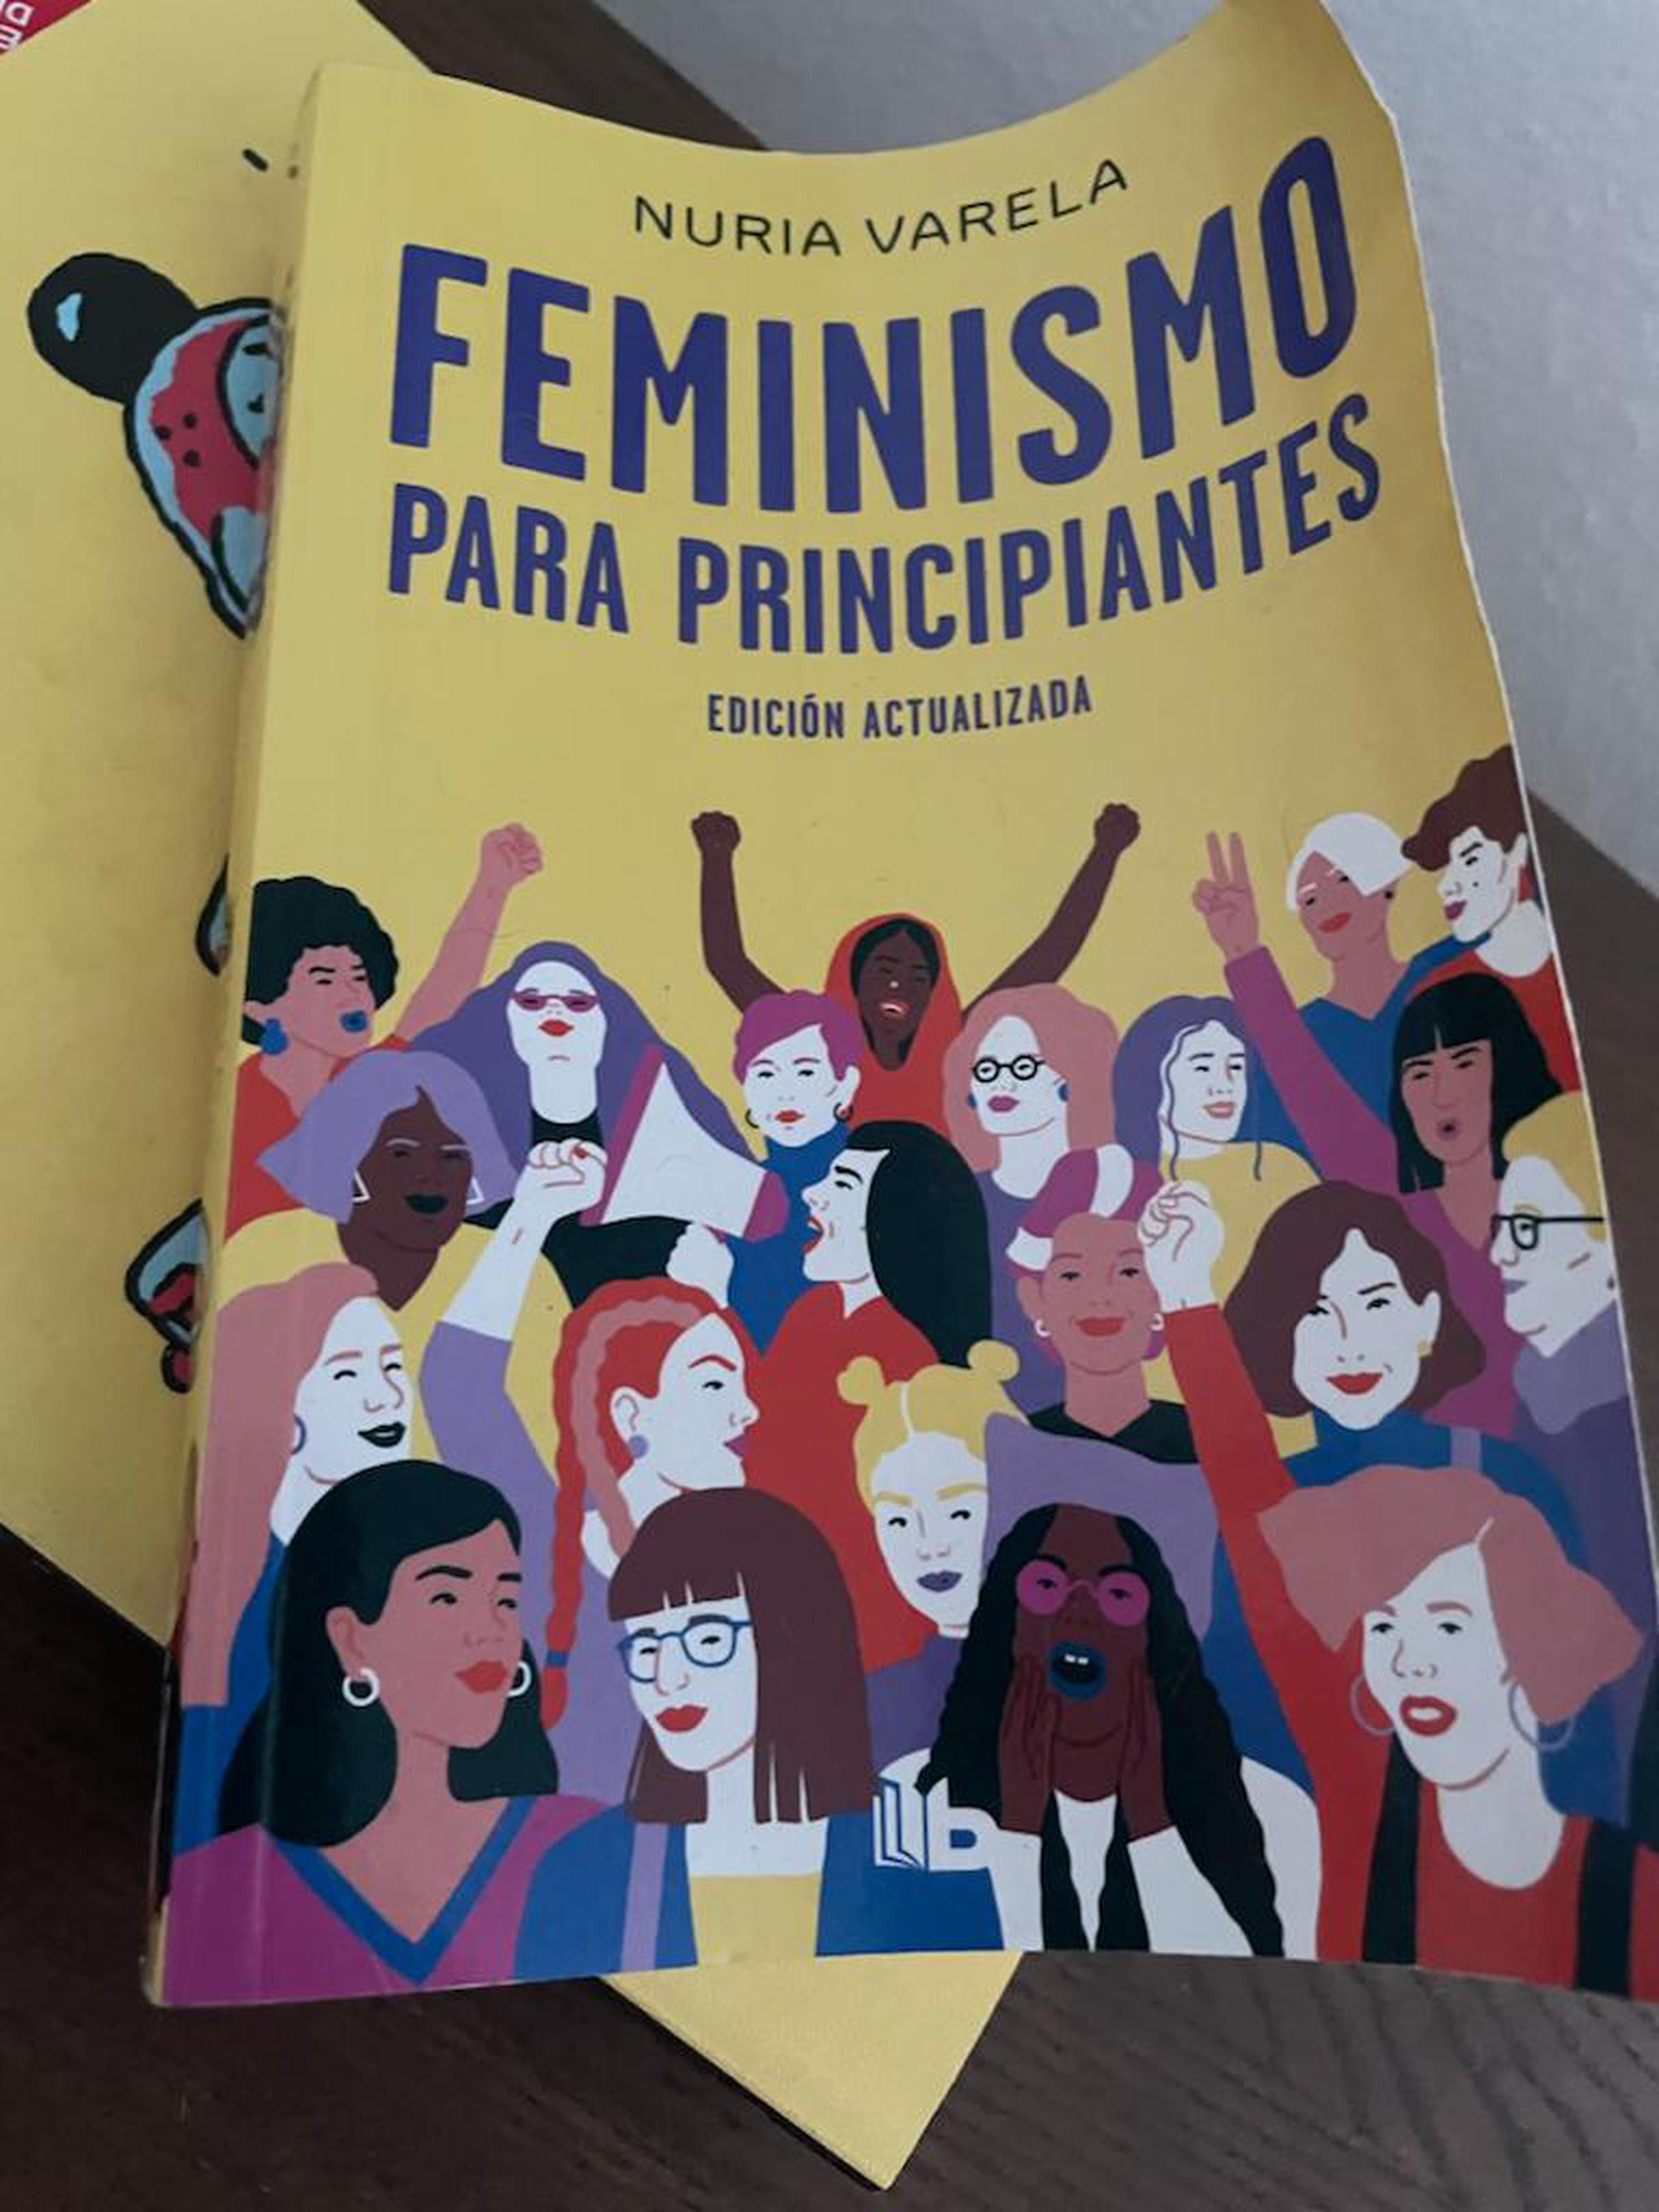 Denis Márquez obsequiaría el libro “Feminismo para principiantes” de Nuria Varela a Lisie Burgos.